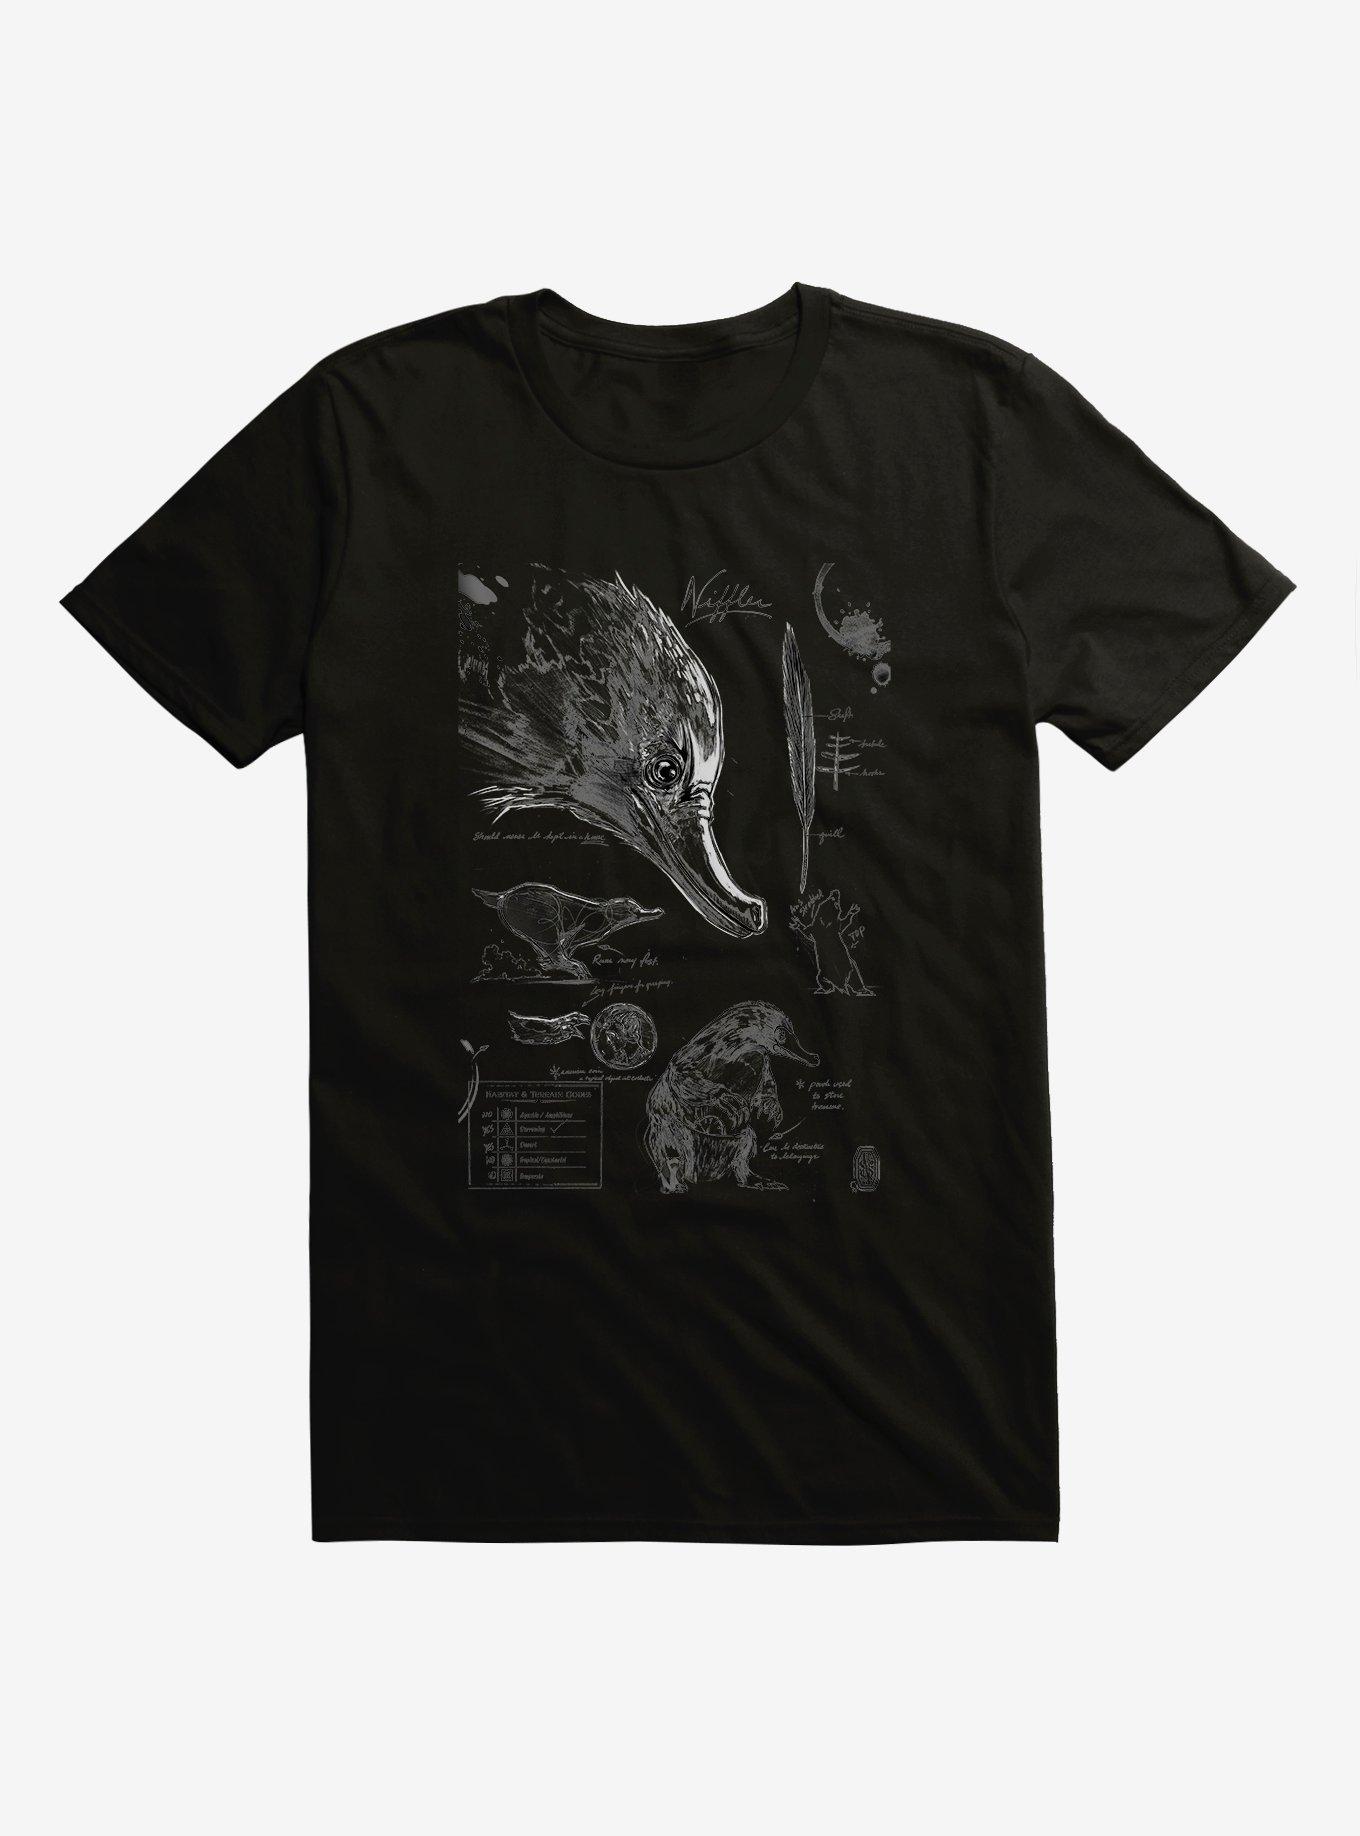 Fantastic Beasts Niffler Sketches T-Shirt, , hi-res